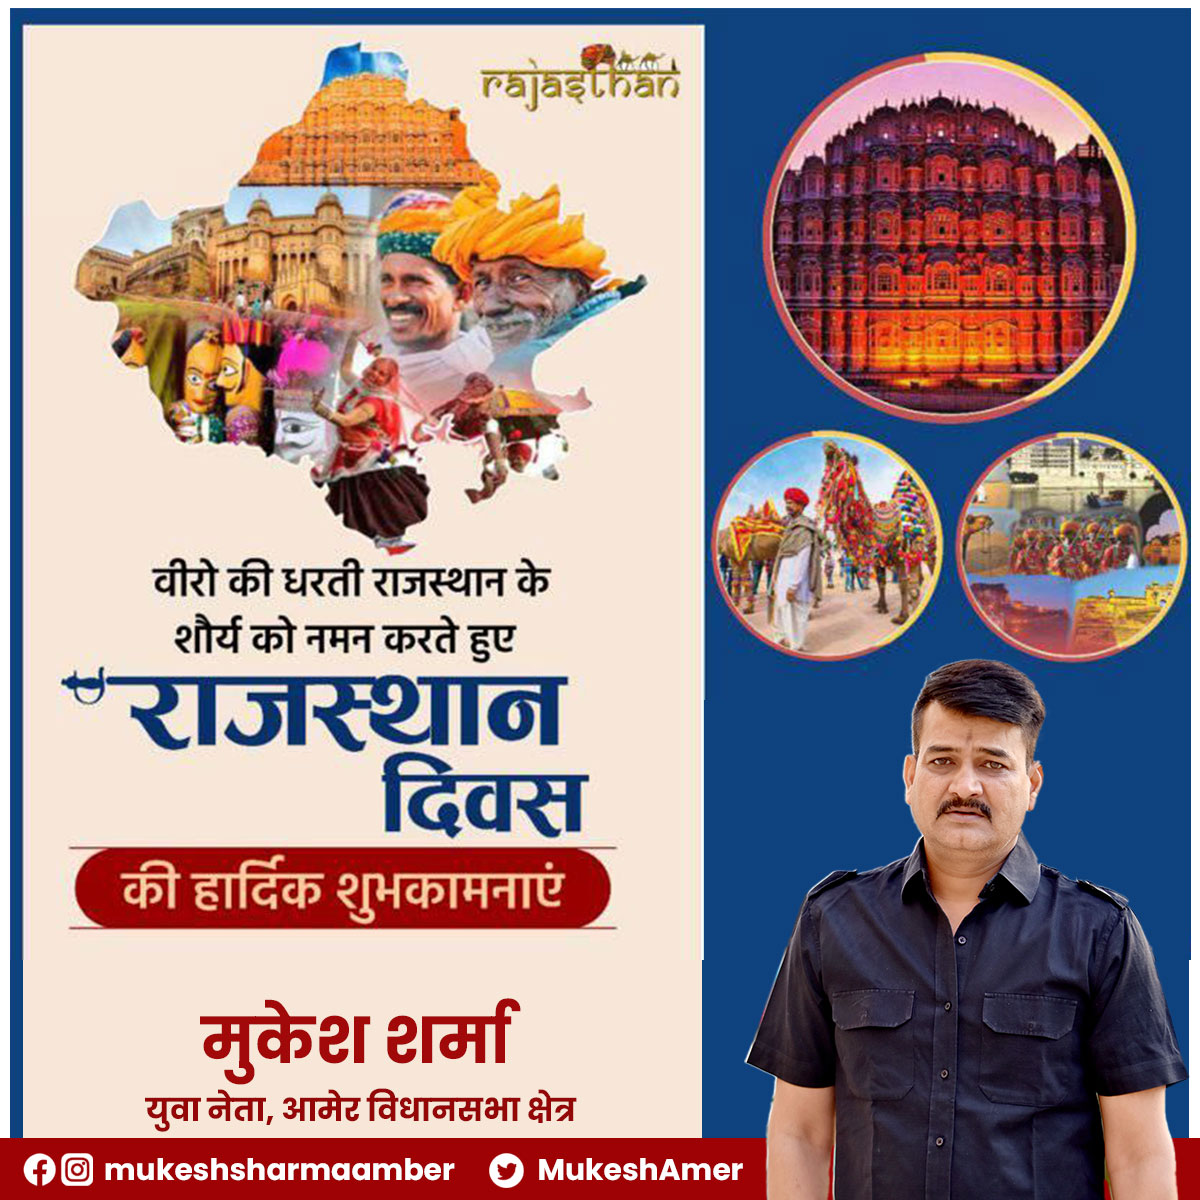 समृद्ध सांस्कृतिक विरासत एवं अद्भुत स्थापत्य कला से परिपूर्ण, वीर और वीरांगनाओं की पावन भूमि राजस्थान के स्थापना दिवस की आप सभी को हार्दिक बधाई एवं शुभकामनाएं।
 खम्मा घणी !🙏🙏
.
.
#RajasthanDiwas #JaiJaiRajasthan  #rajasthan #RajasthanDiwas2023 #राजस्थान_दिवस #धरतीधोरांरी